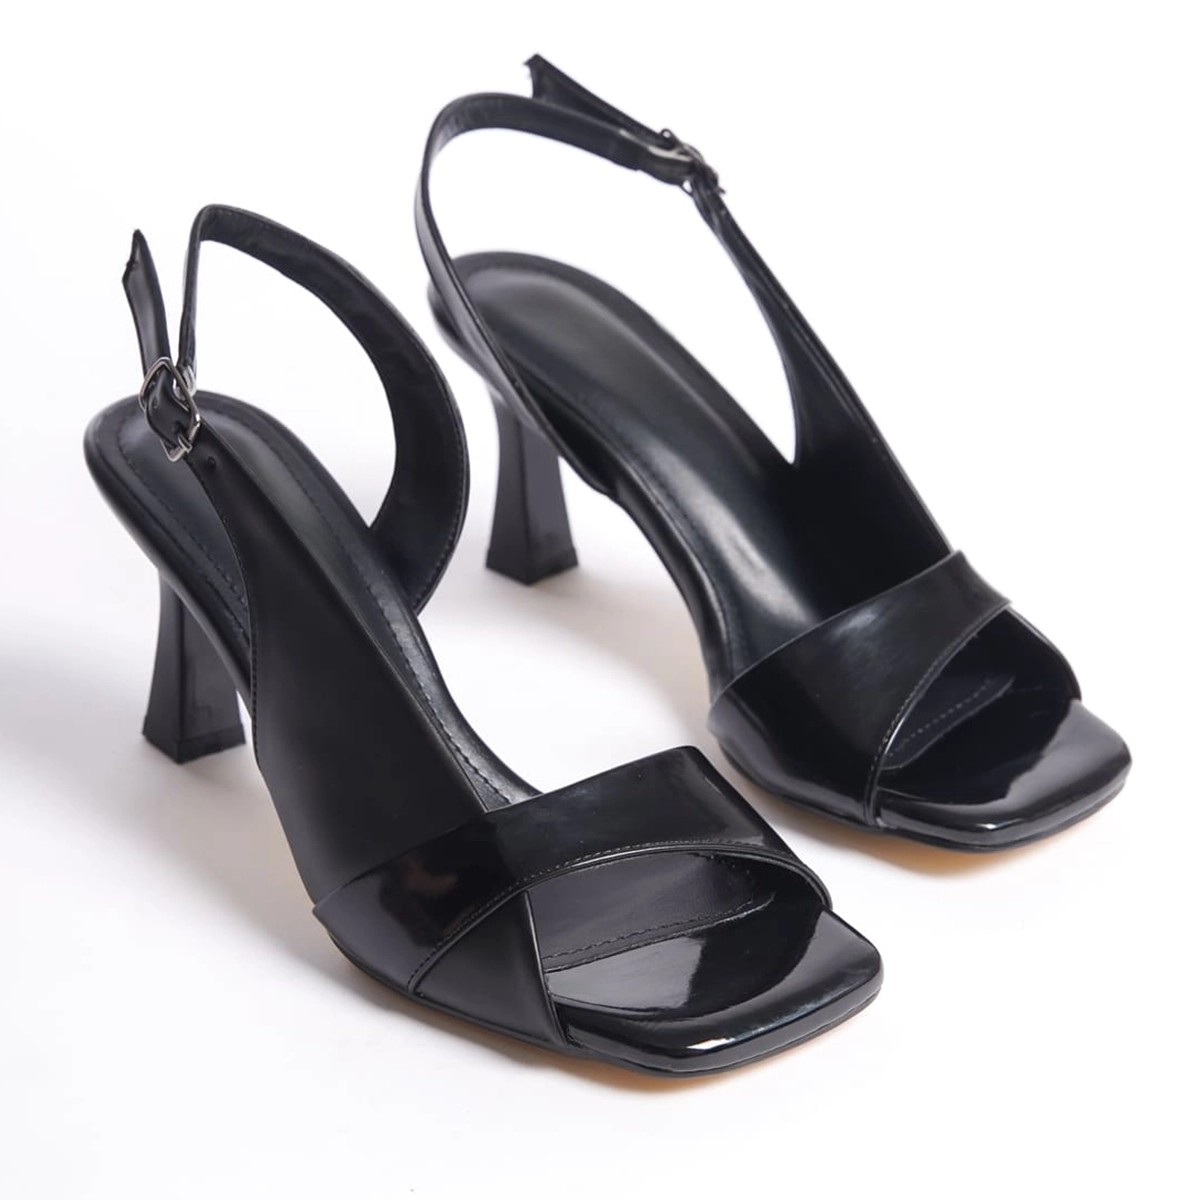 Rugan Bantlı İnce Yüksek Topuklu Ayakkabı - Siyah